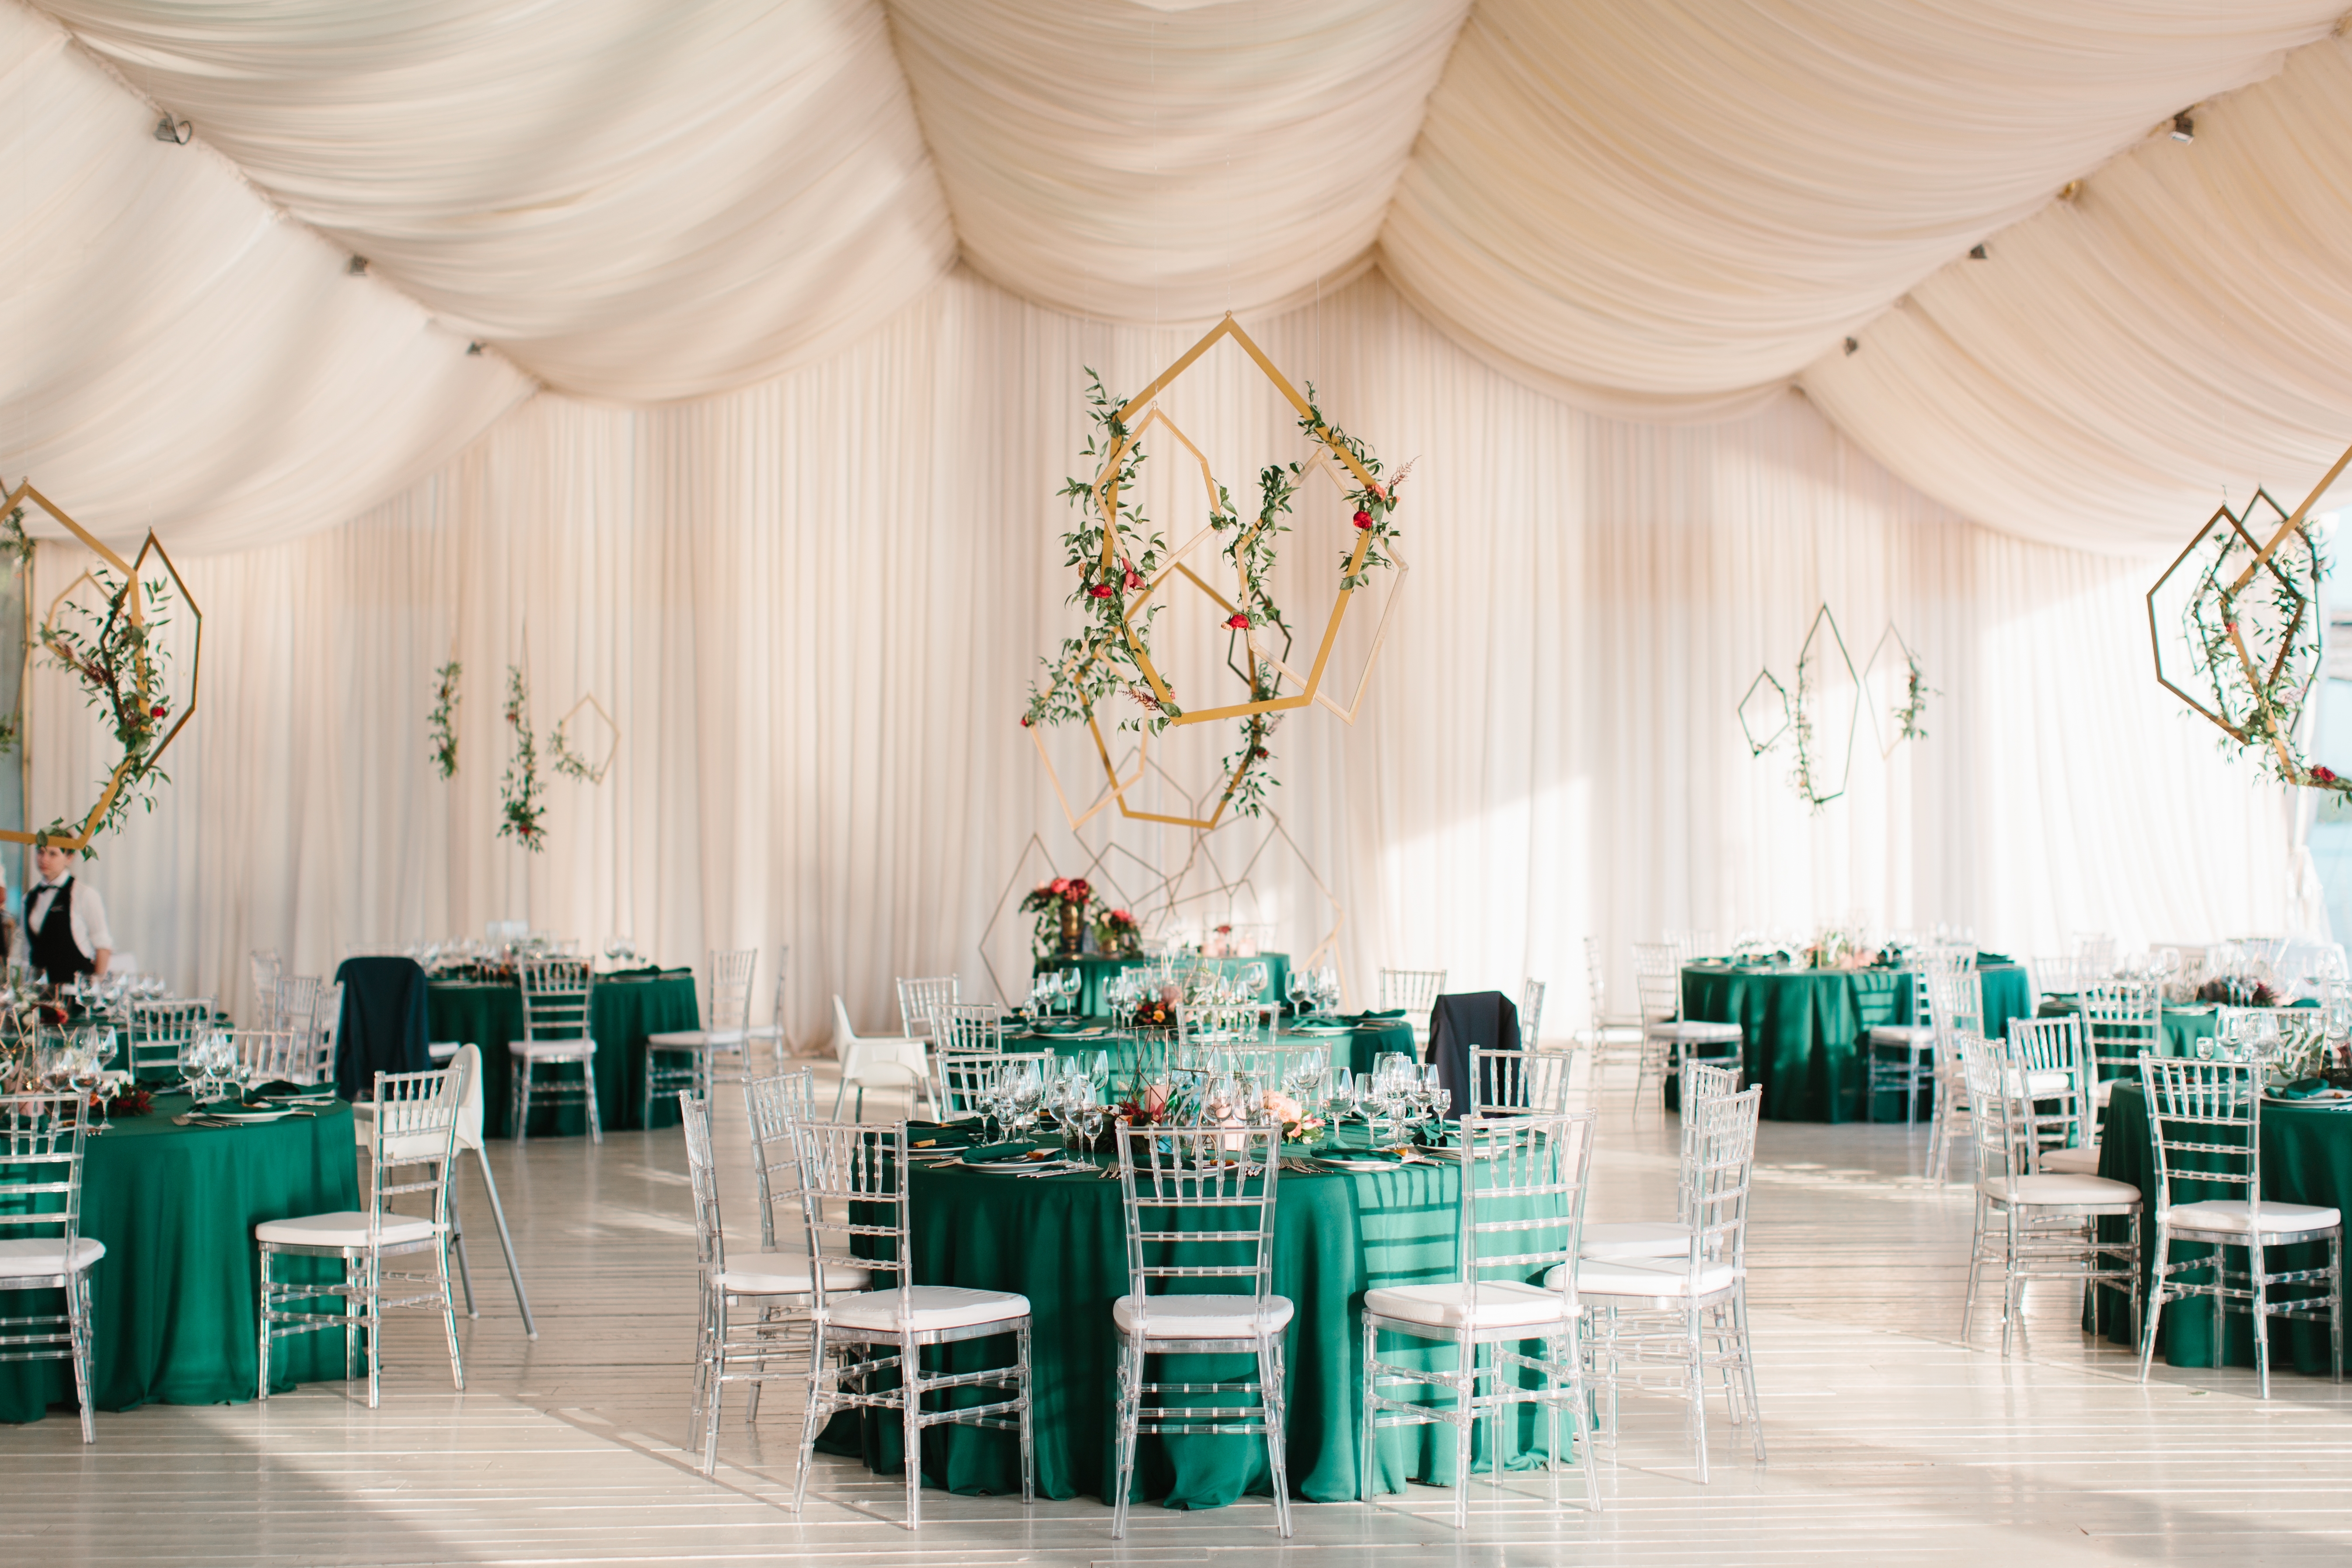 La decoración de la boda | Fuente: Shutterstock